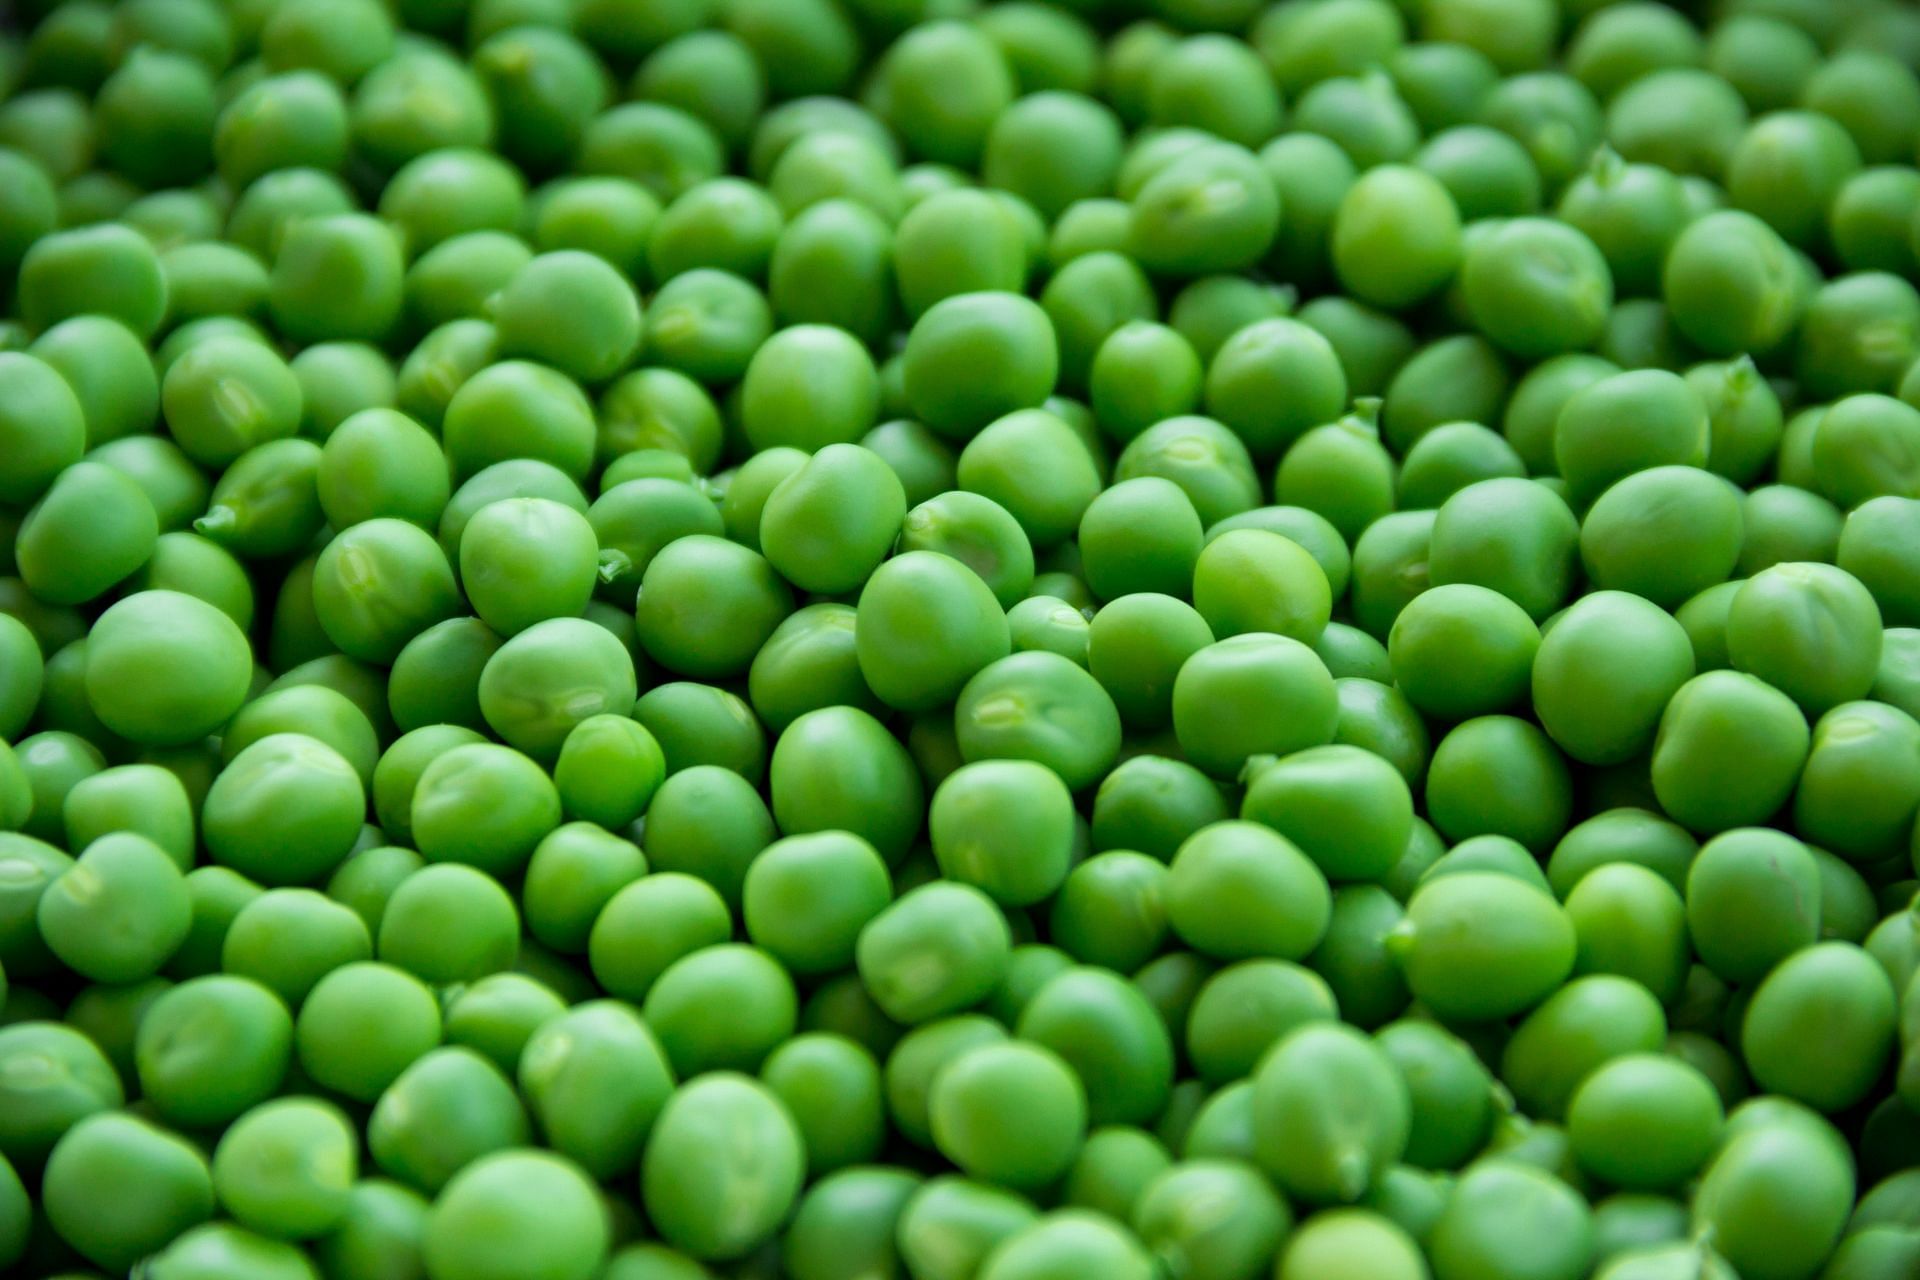 Vitamin B1 in green peas helps convert food into energy. (Image via Pexels)